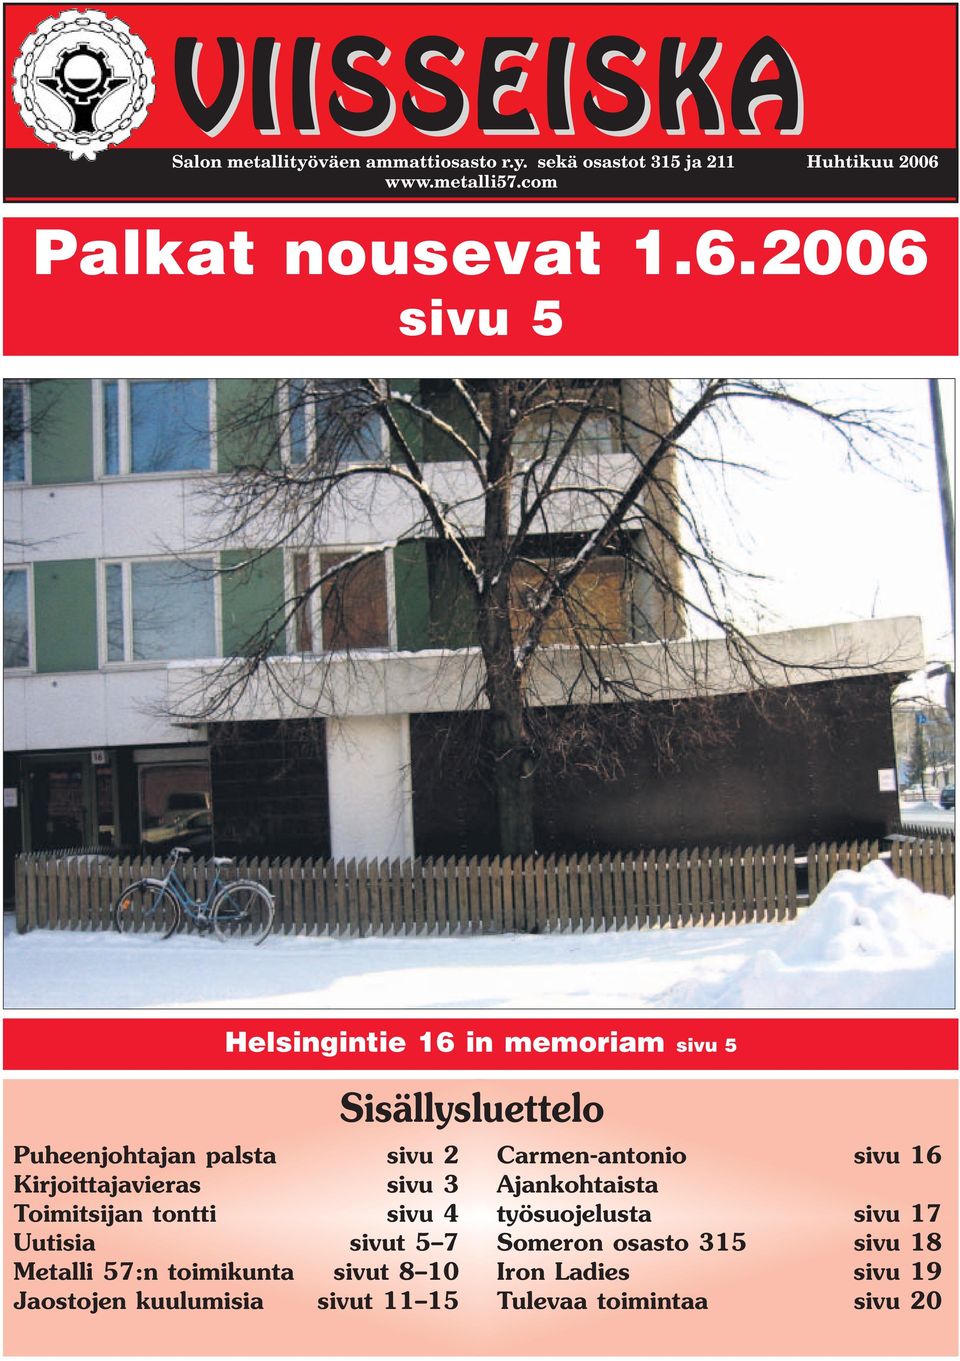 2006 sivu 5 Helsingintie 16 in memoriam sivu 5 Puheenjohtajan palsta sivu 2 Kirjoittajavieras sivu 3 Toimitsijan tontti